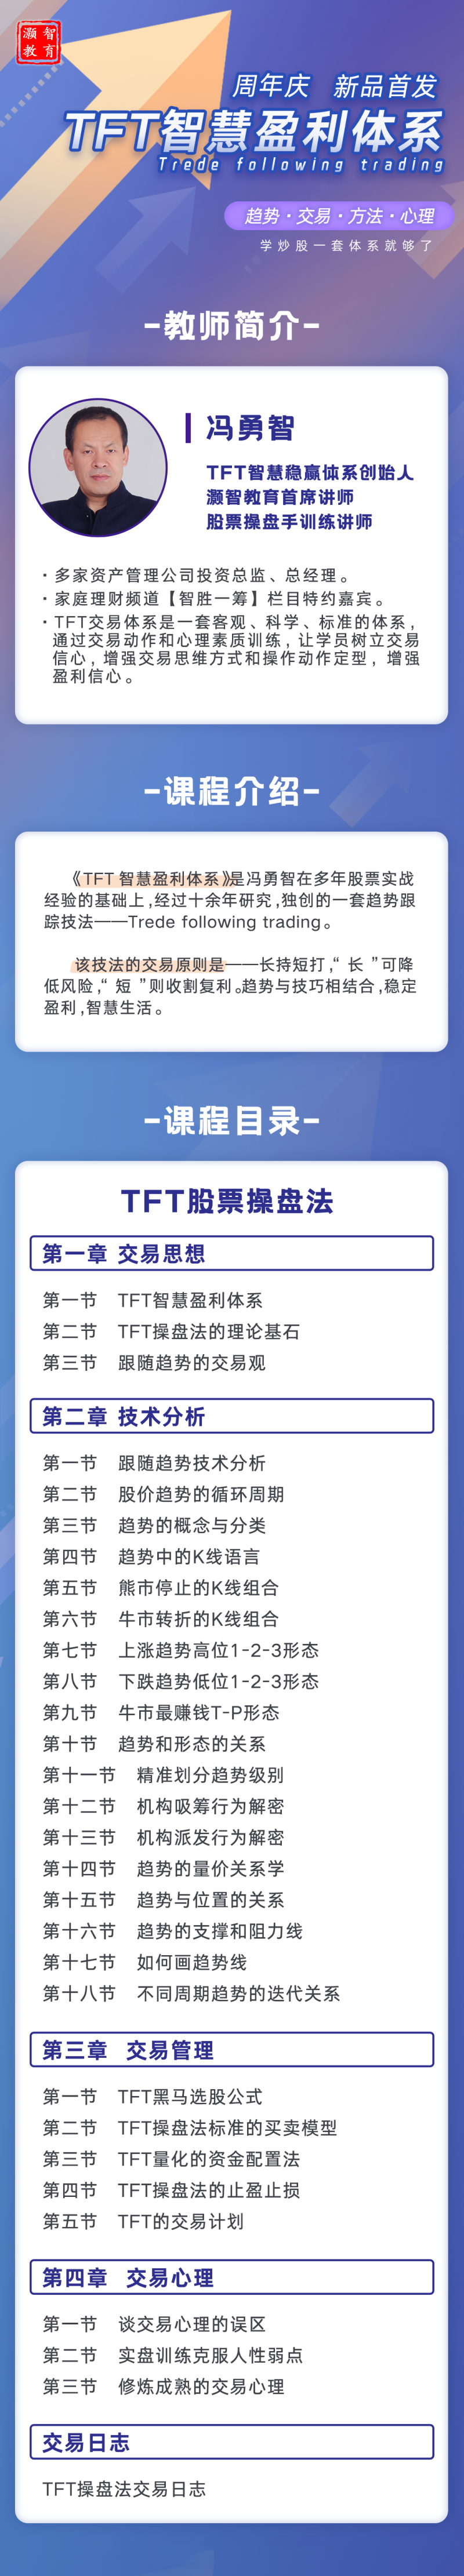 冯勇智——TFT智慧盈利体系趋势跟踪技法插图2